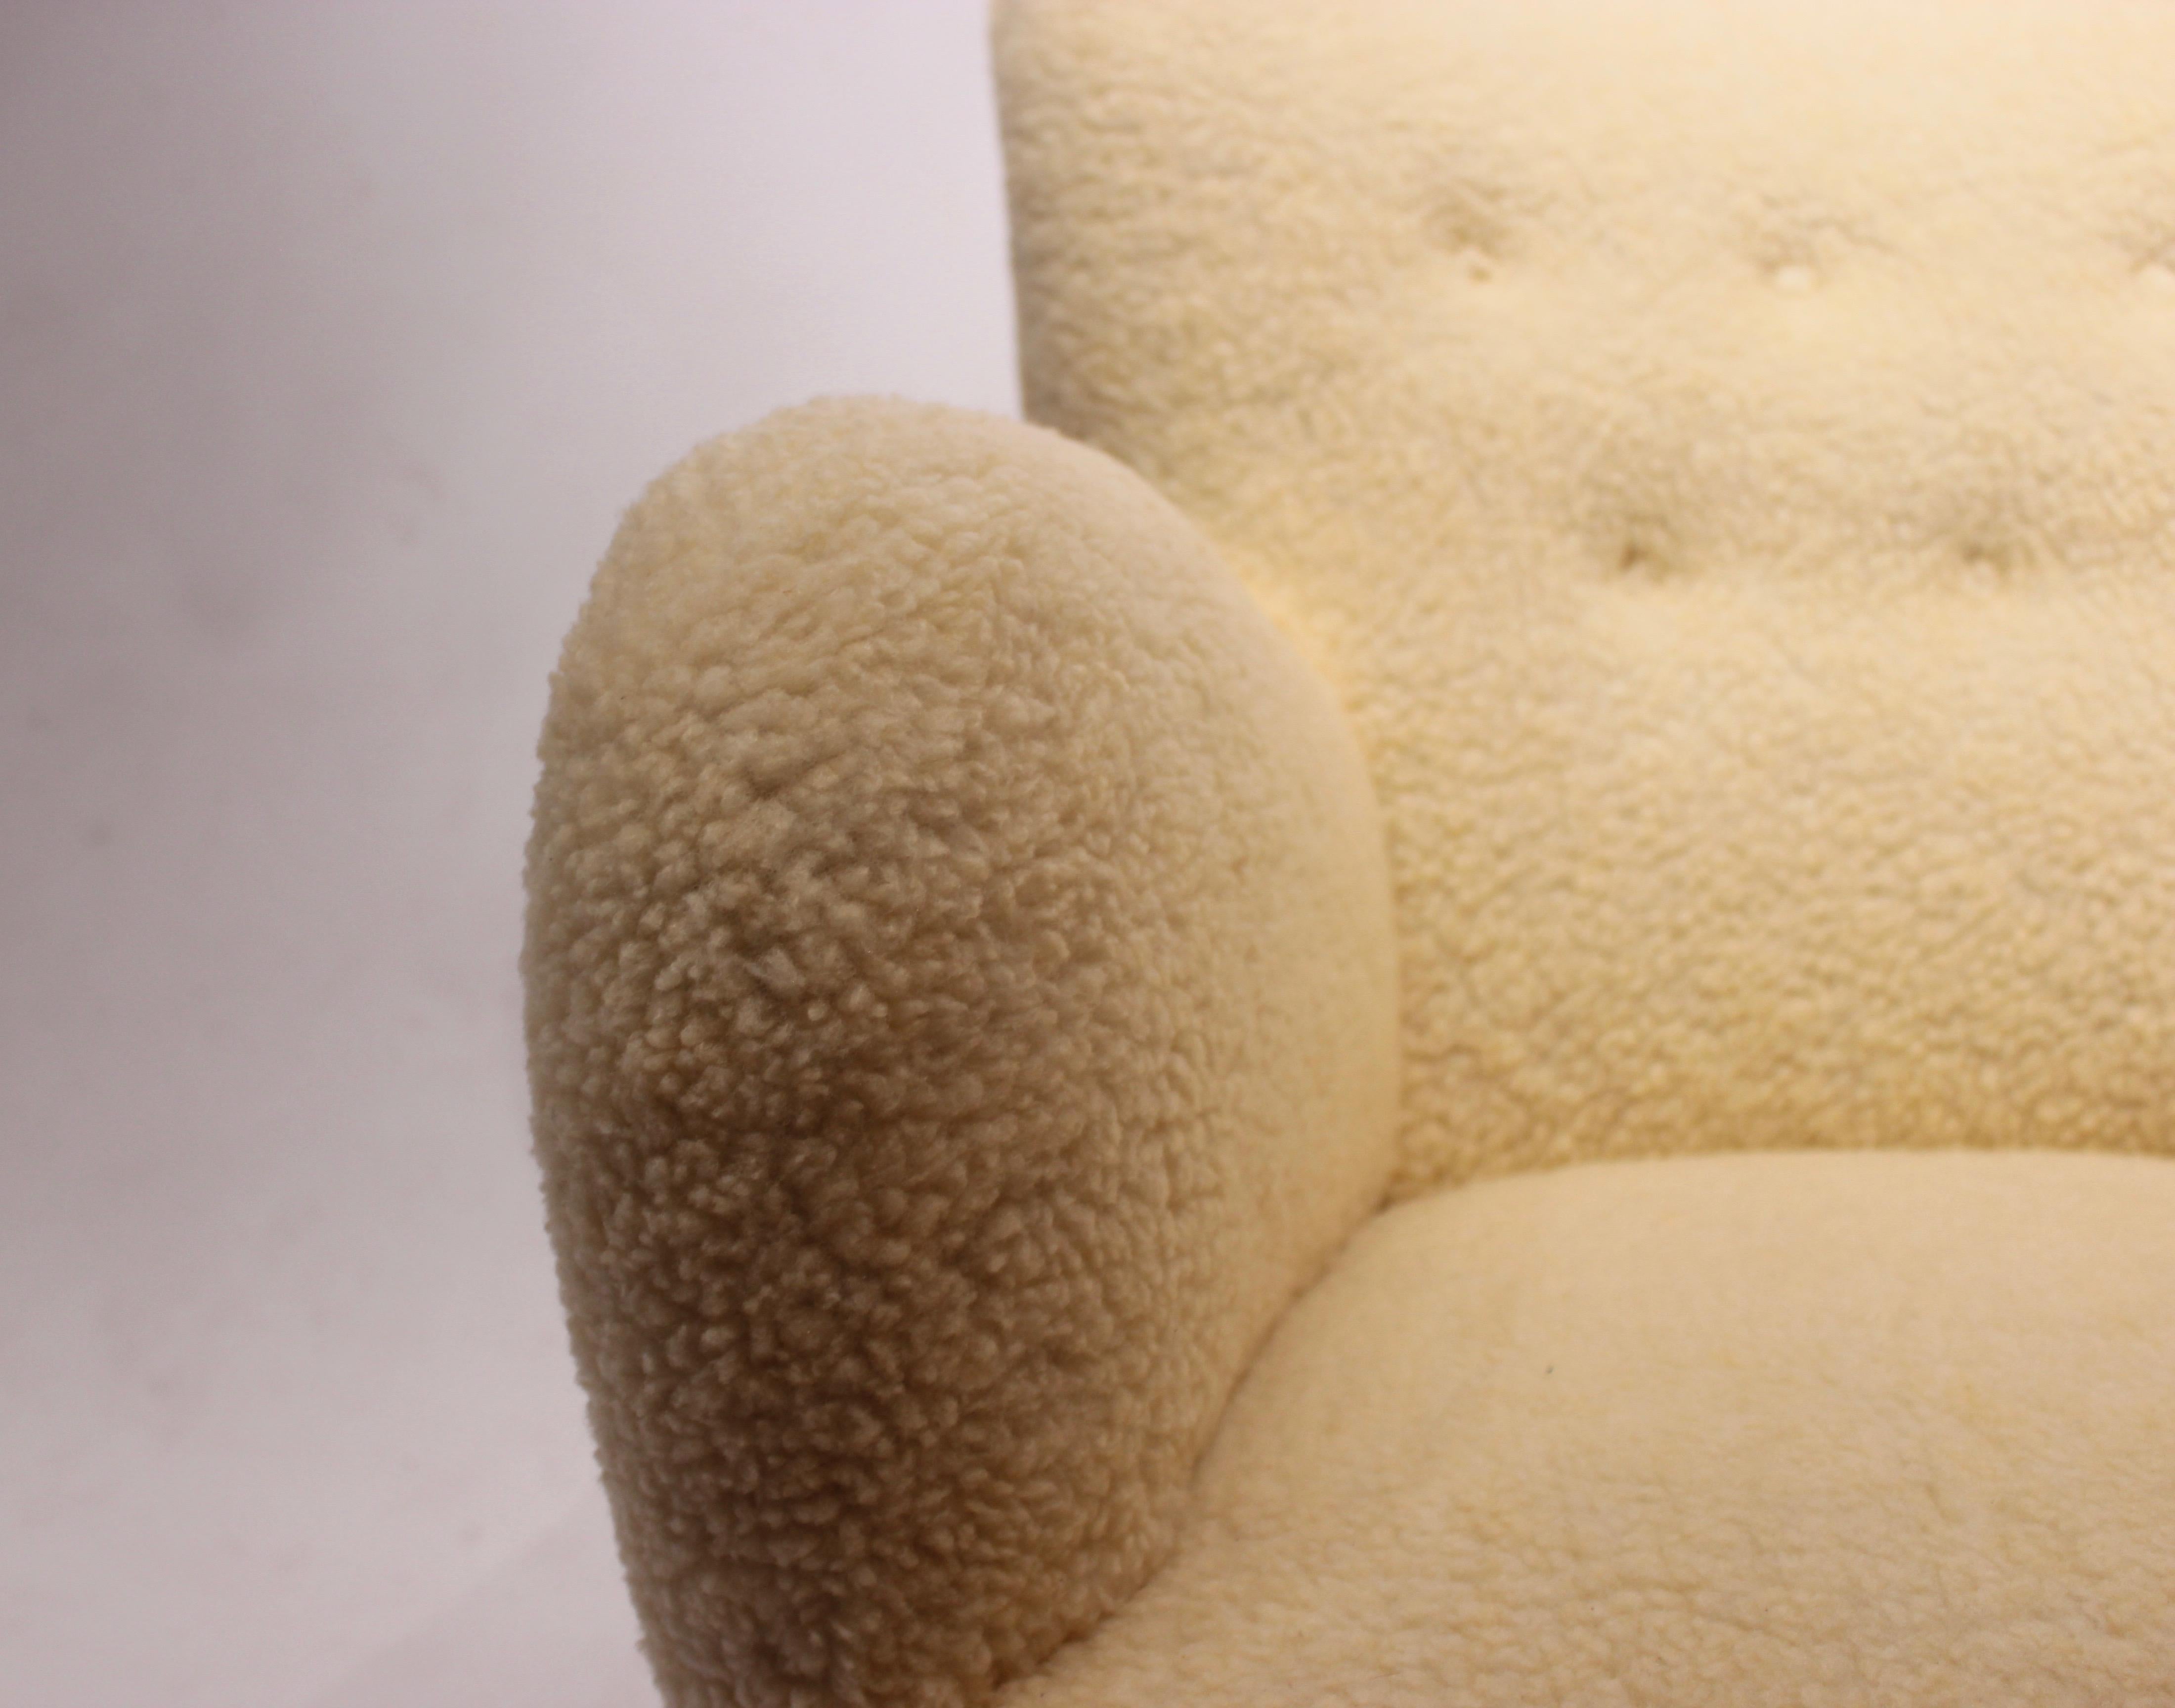 sheep wool chair